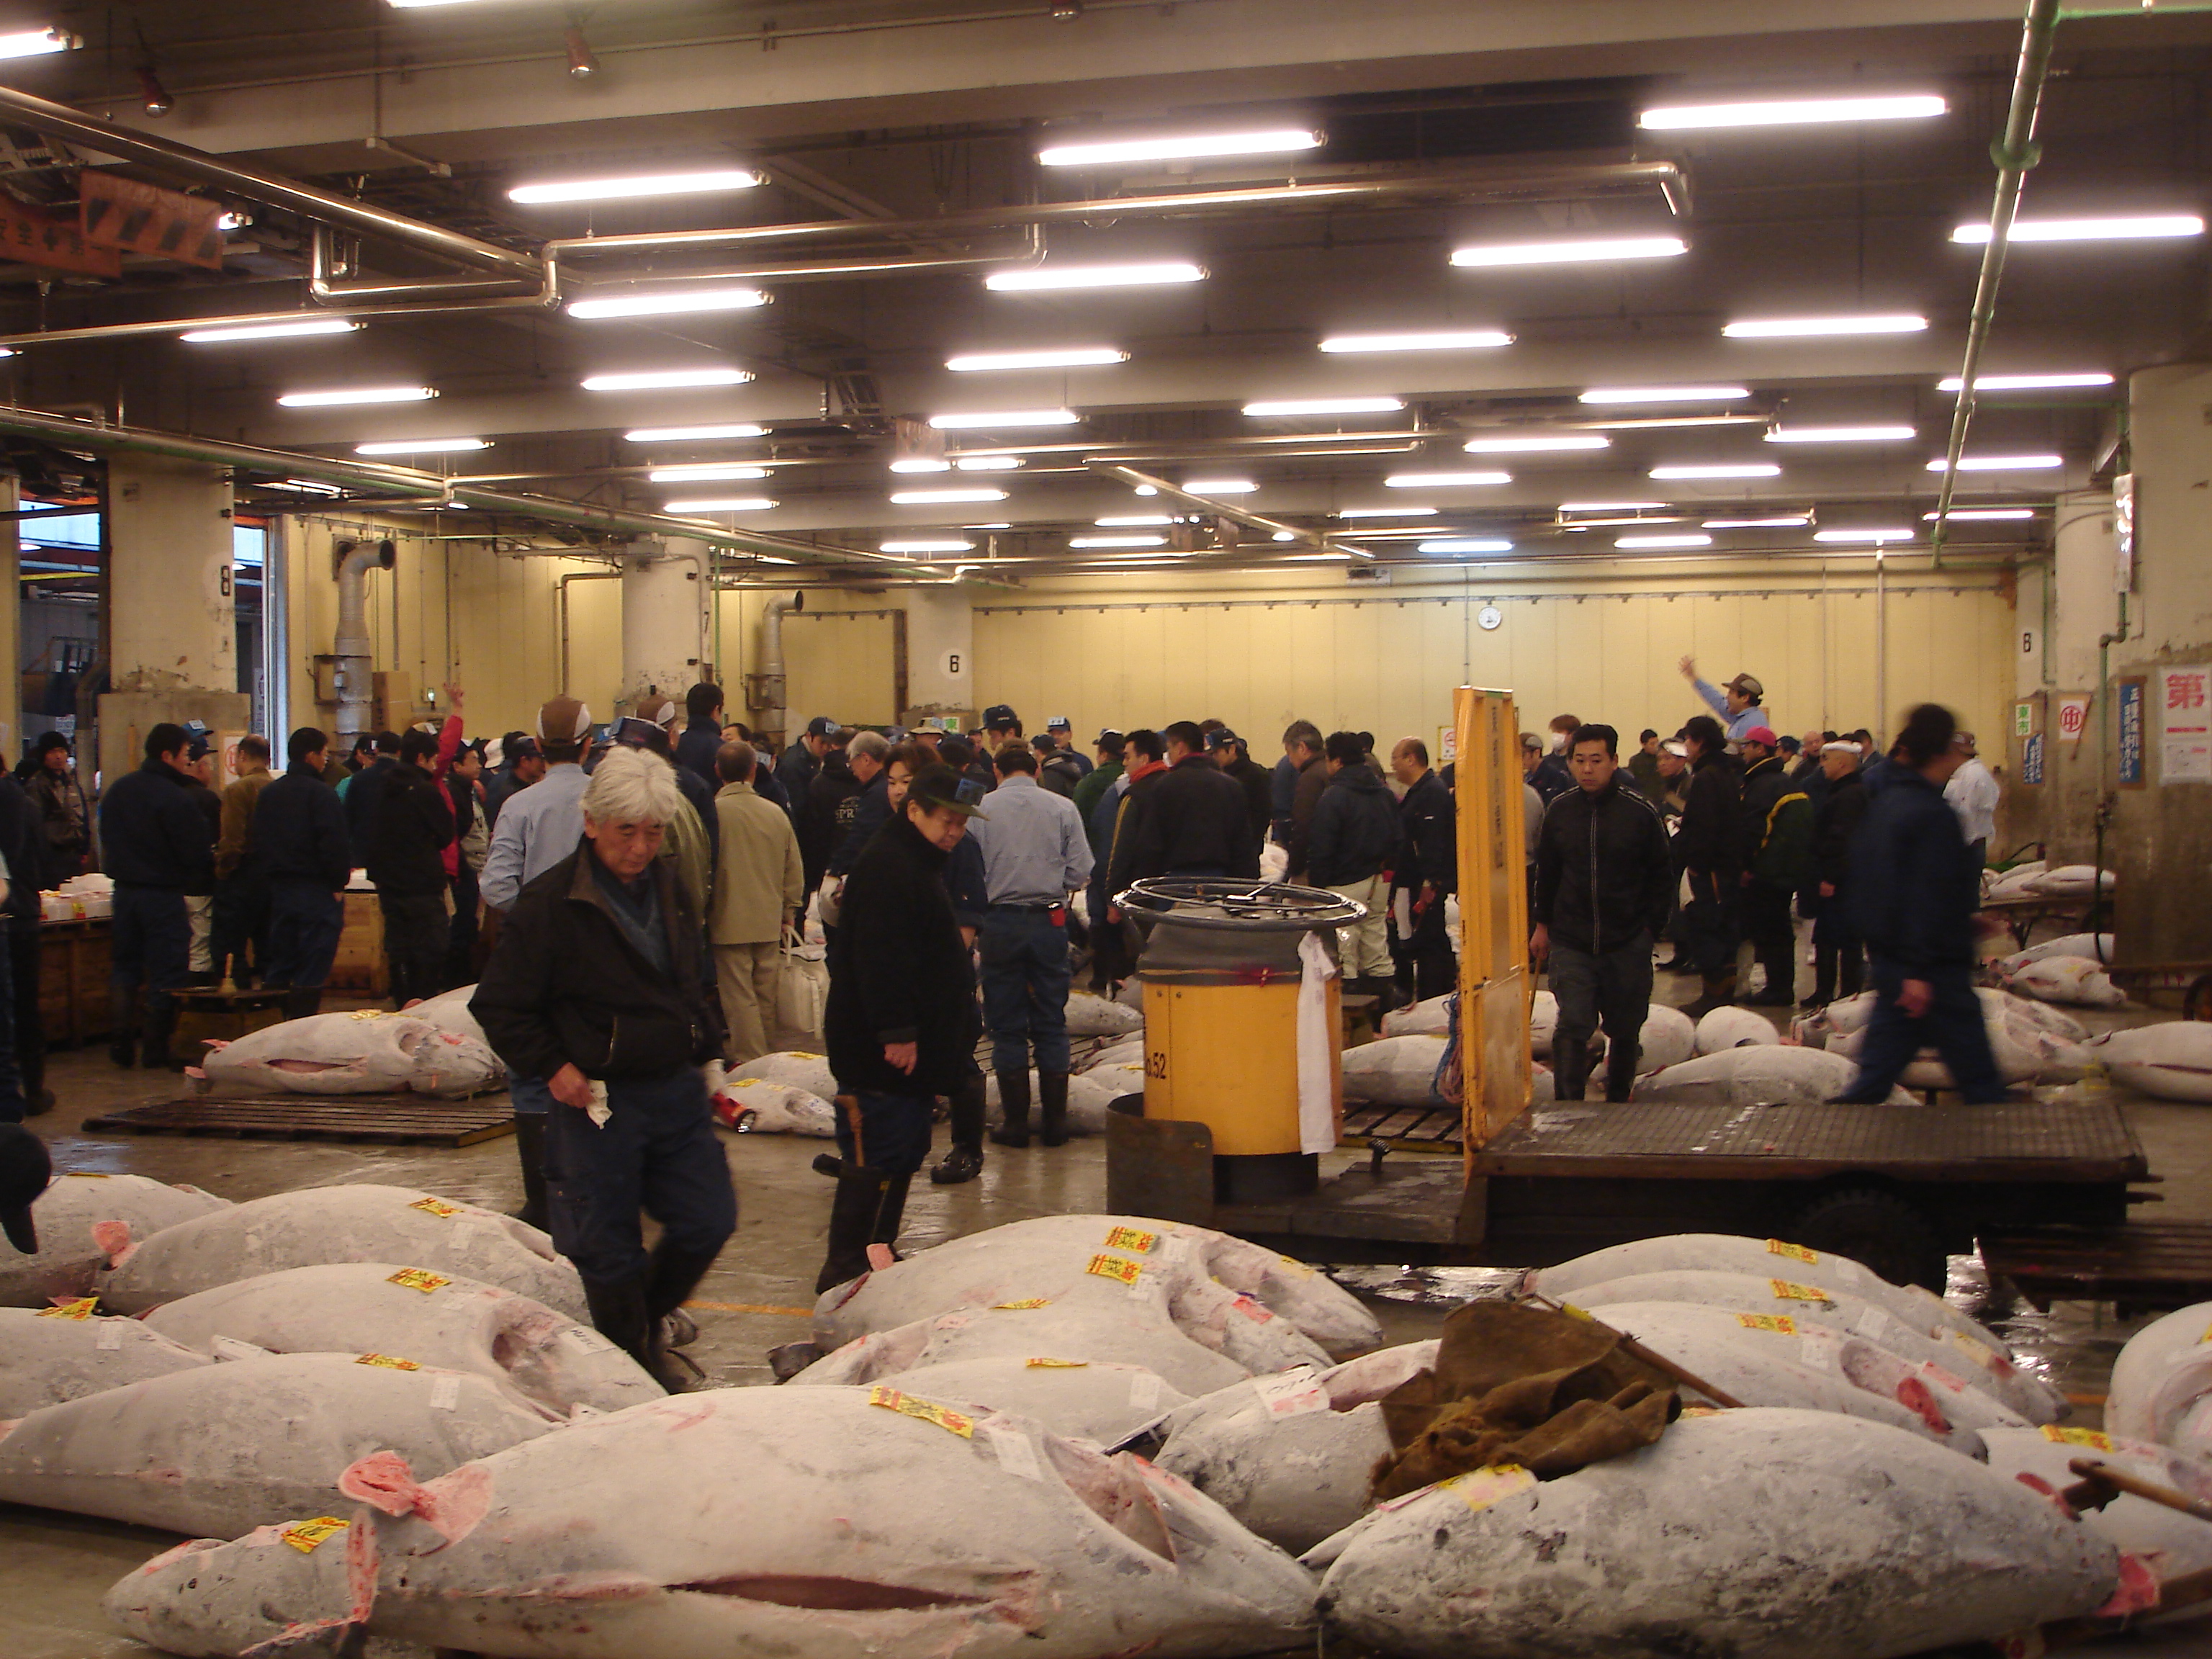 tsukiji market